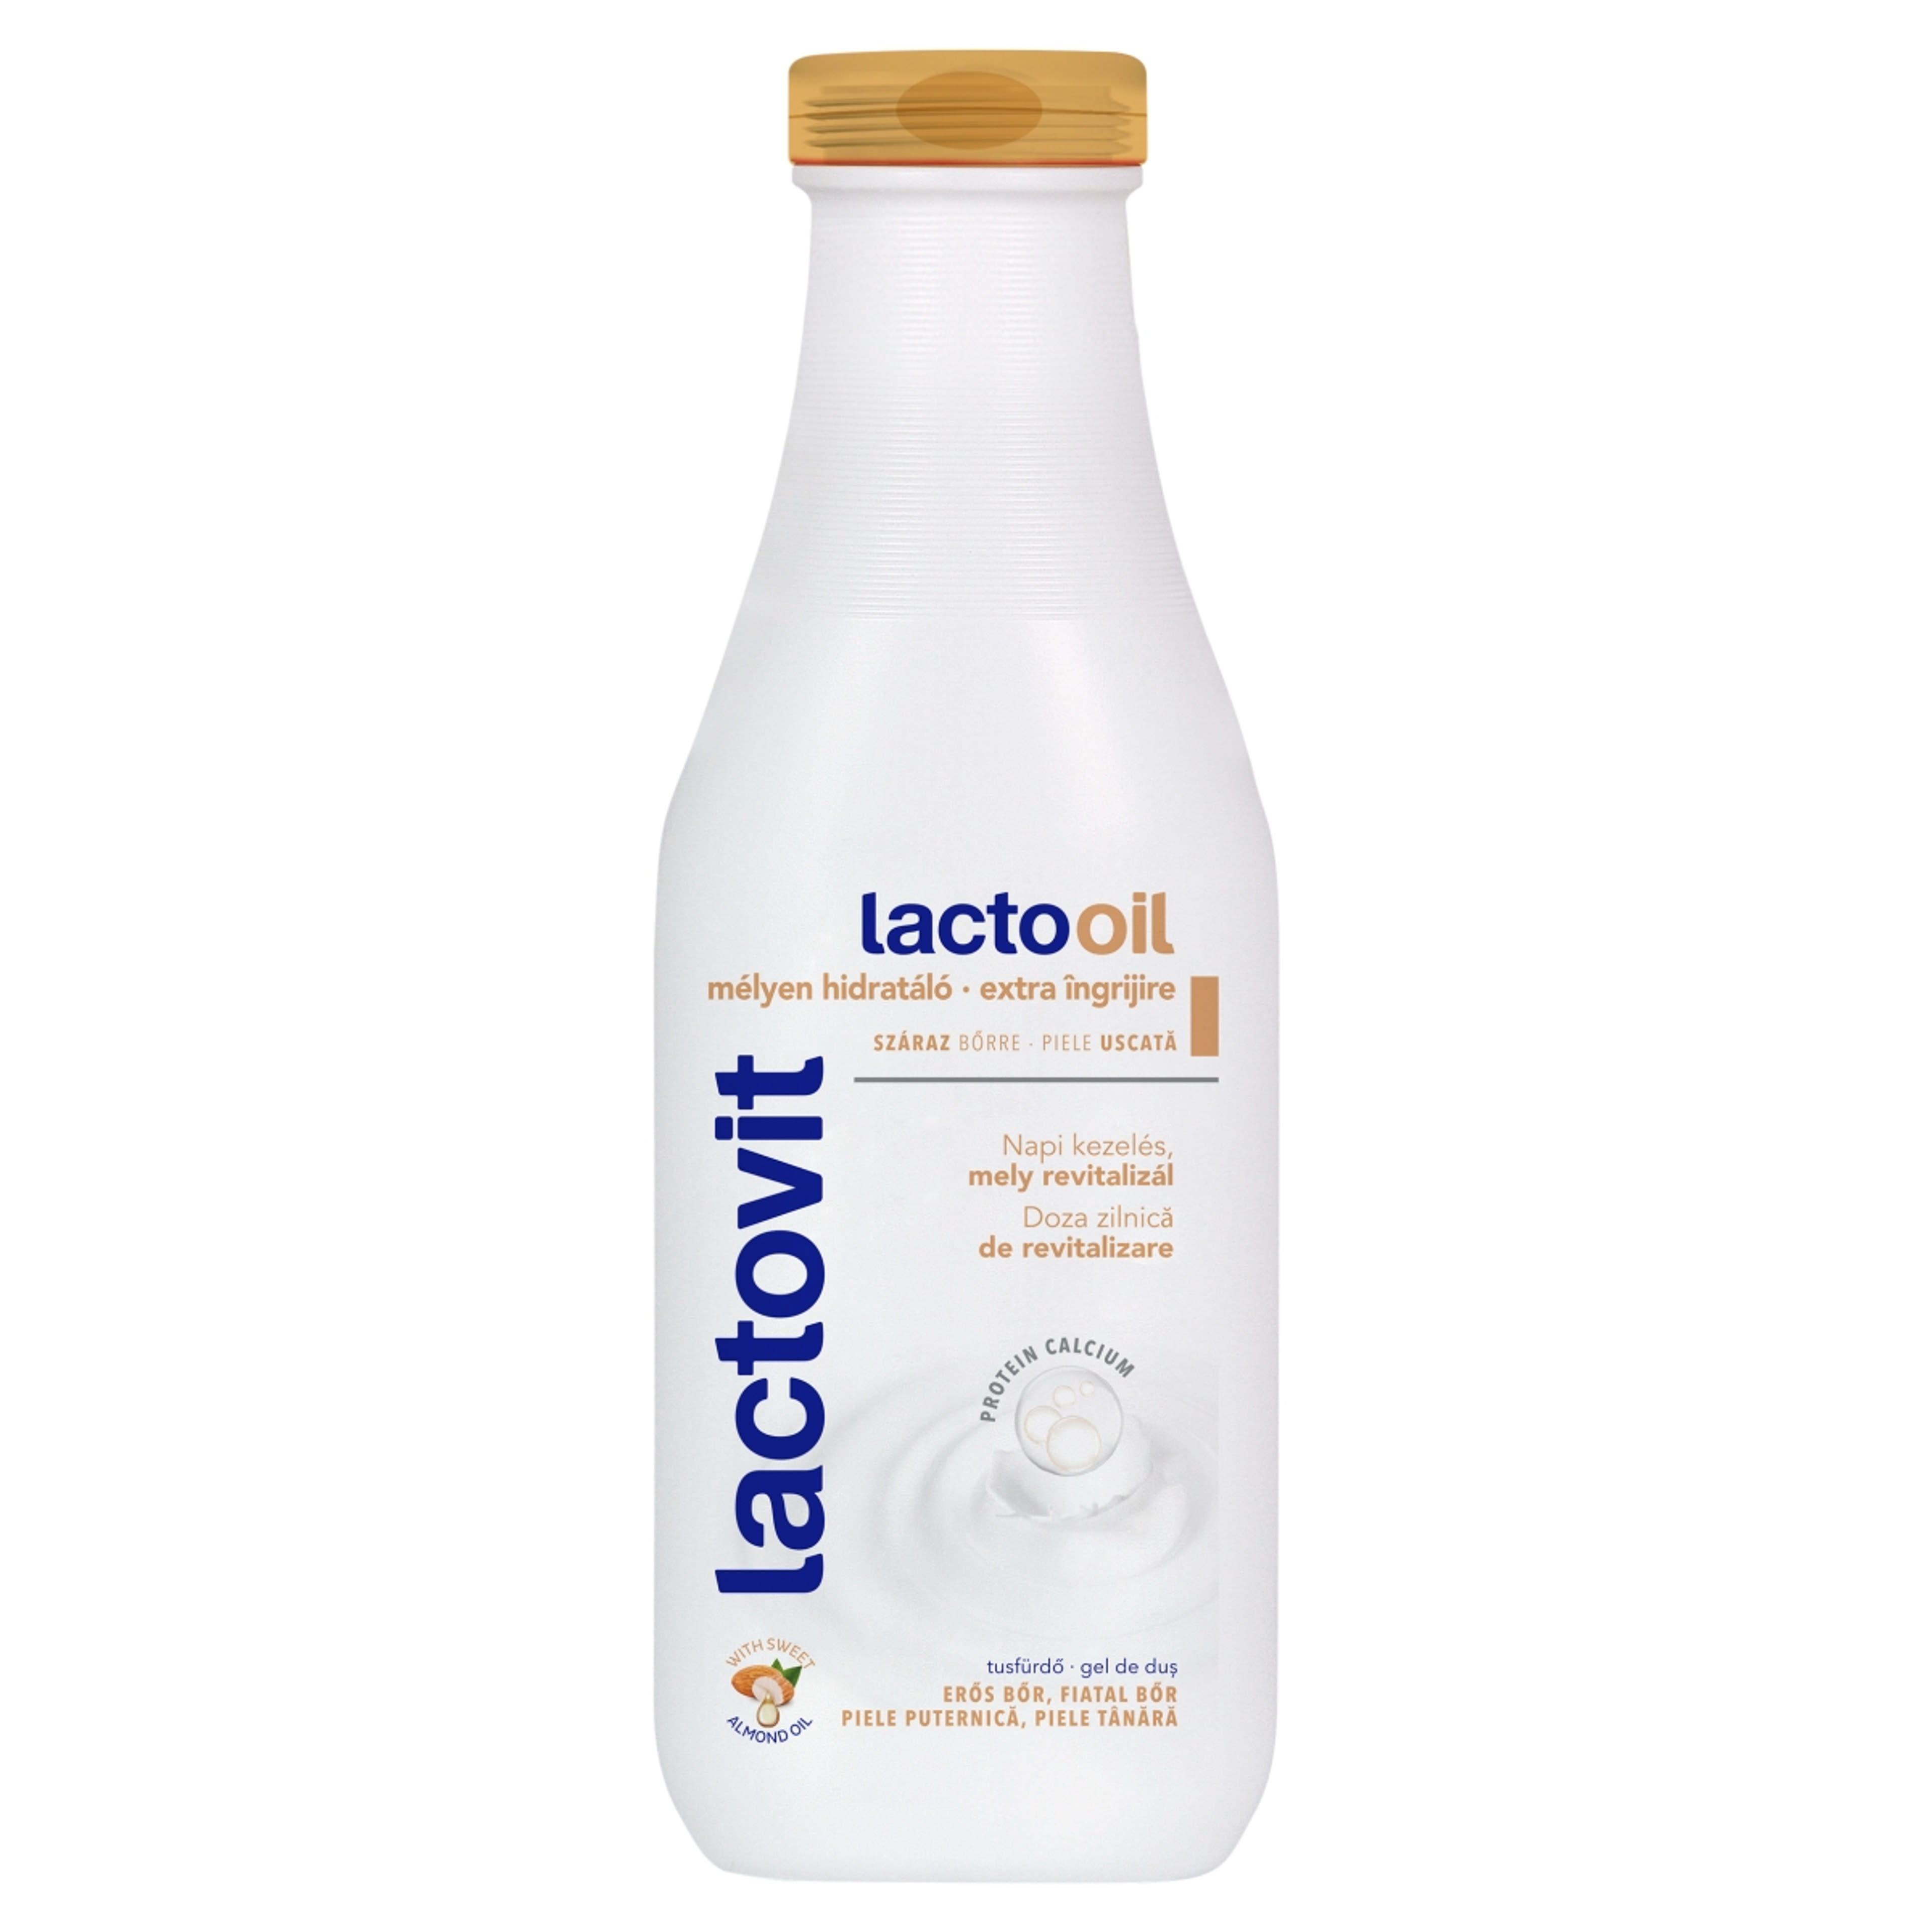 Lactovit tusfürdő Lactooil - 600 ml